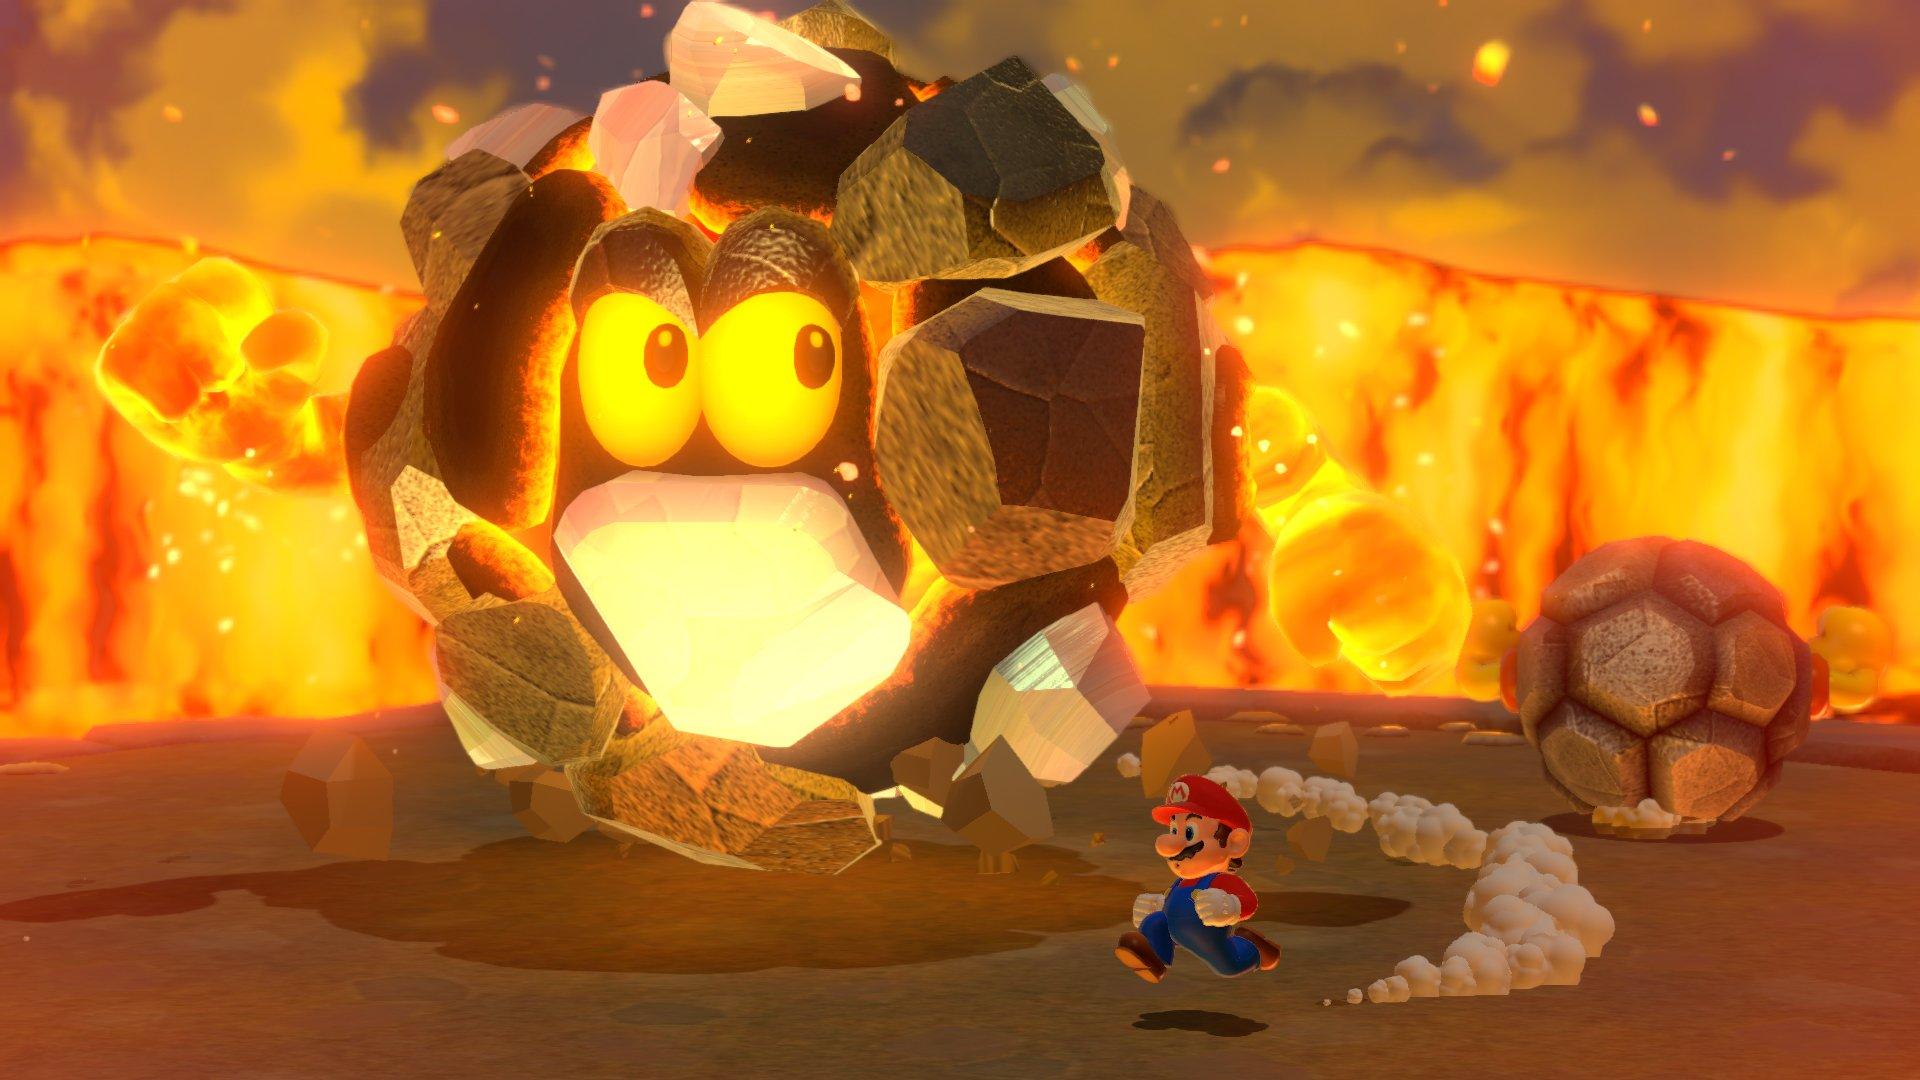 Super Mario 3D World Plus Bowser's Fury